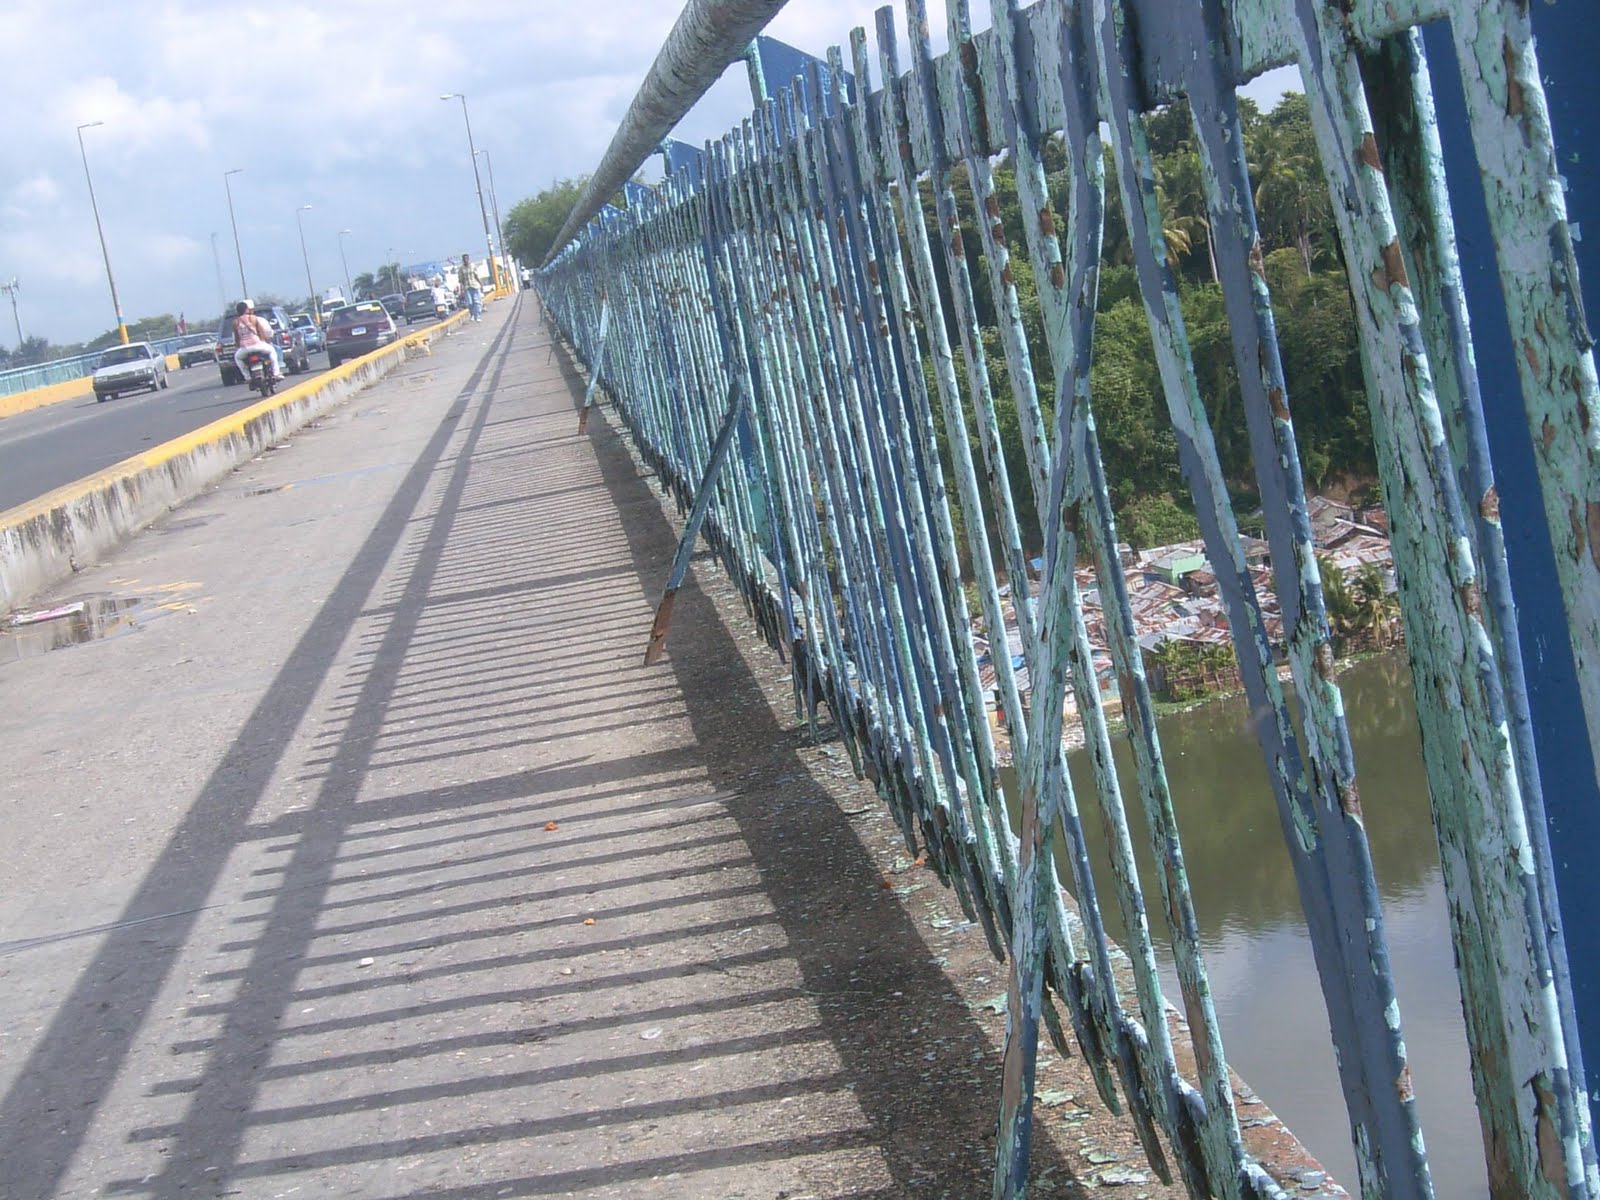 Este puente va a caer - Cancin del Grupo Encanto Cantajuegos